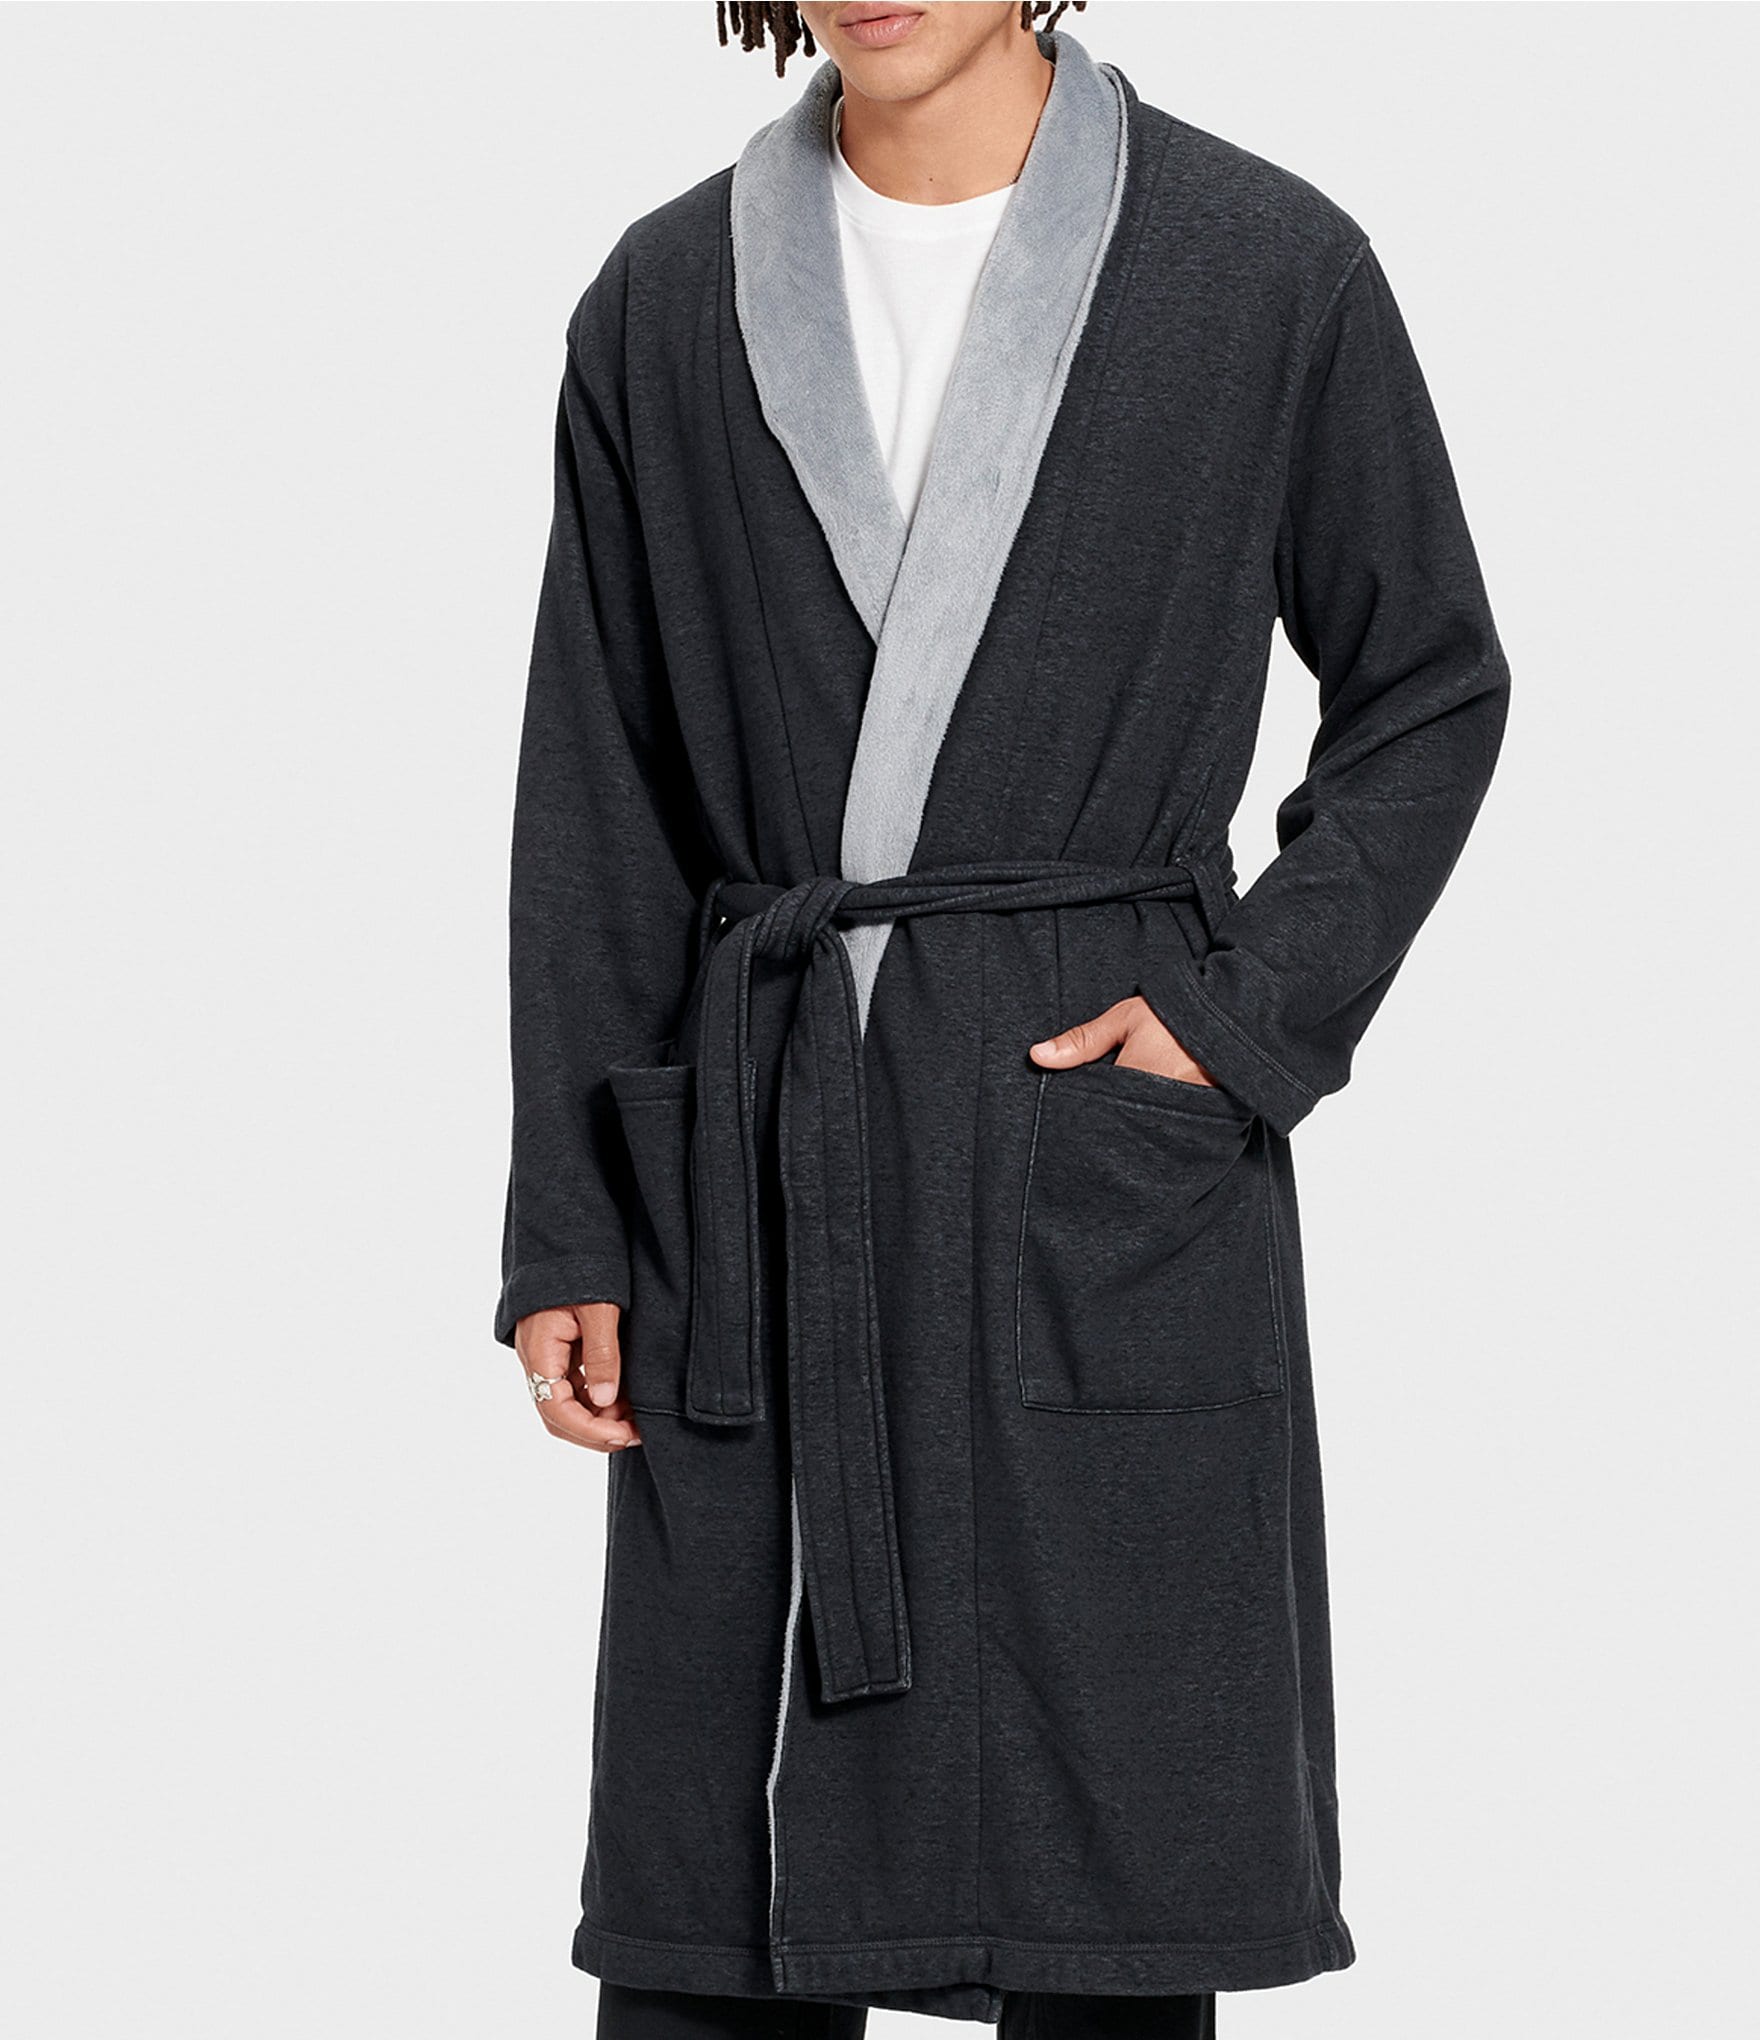 Buy > ugg mens robe nordstrom > in stock